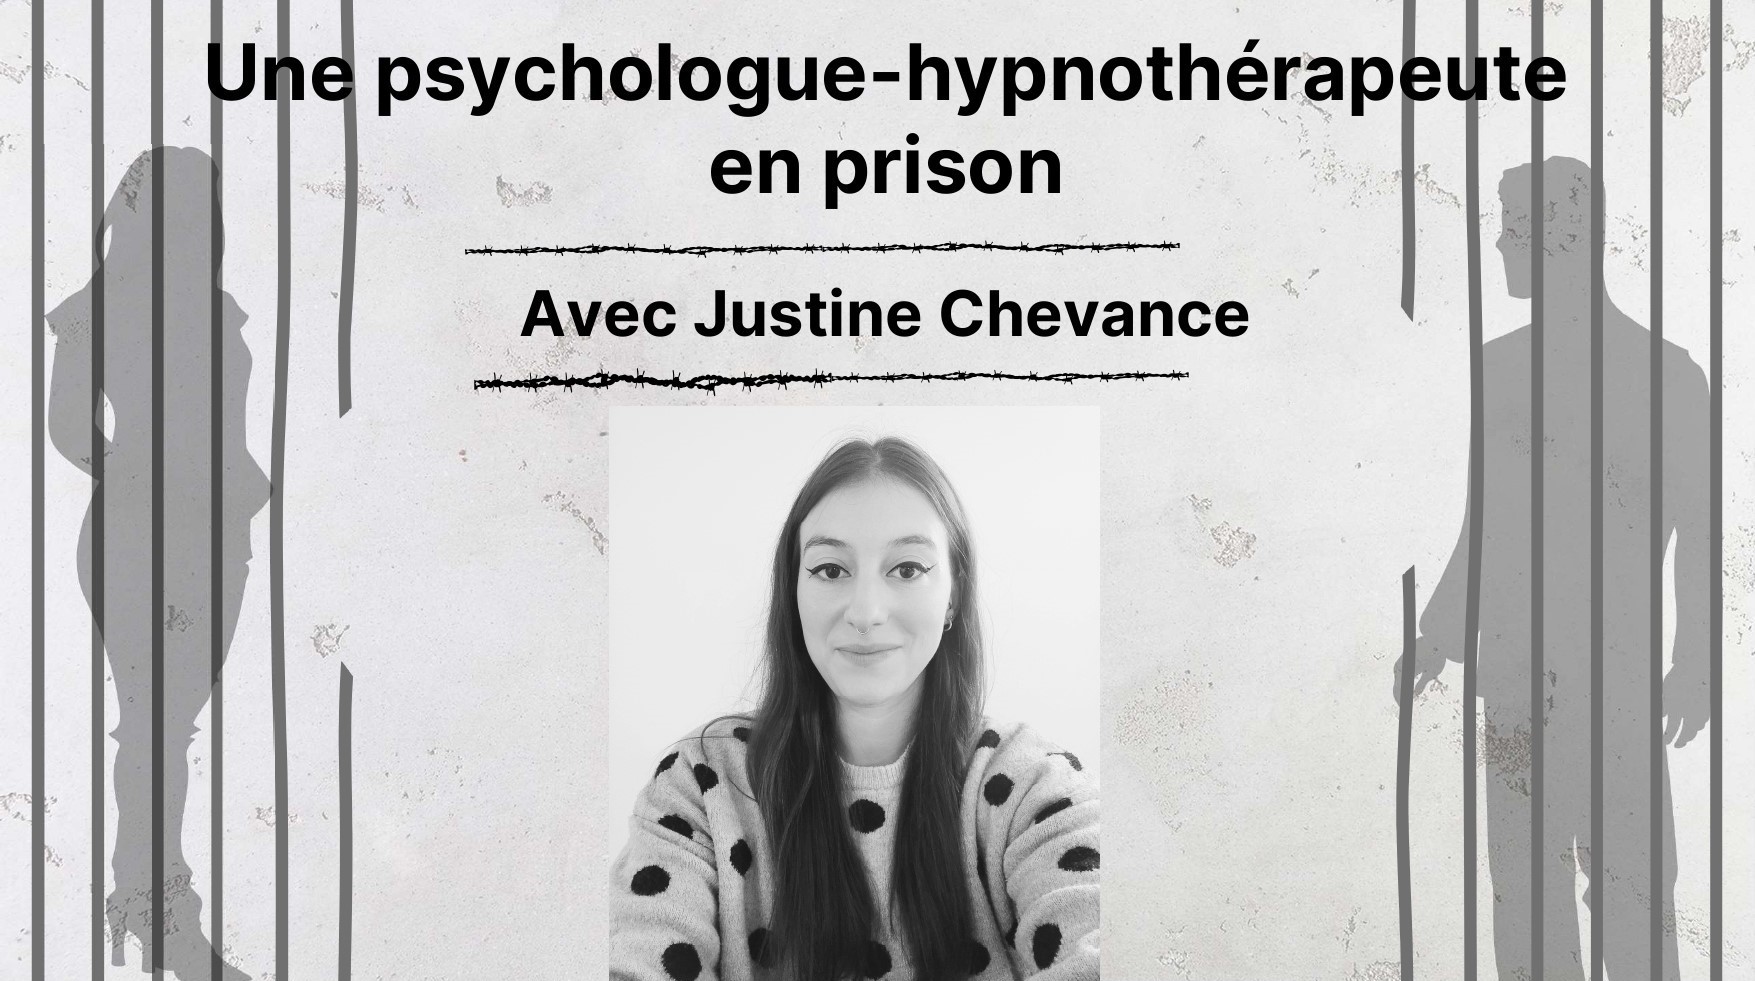 Une psychologue-hypnothérapeute en prison